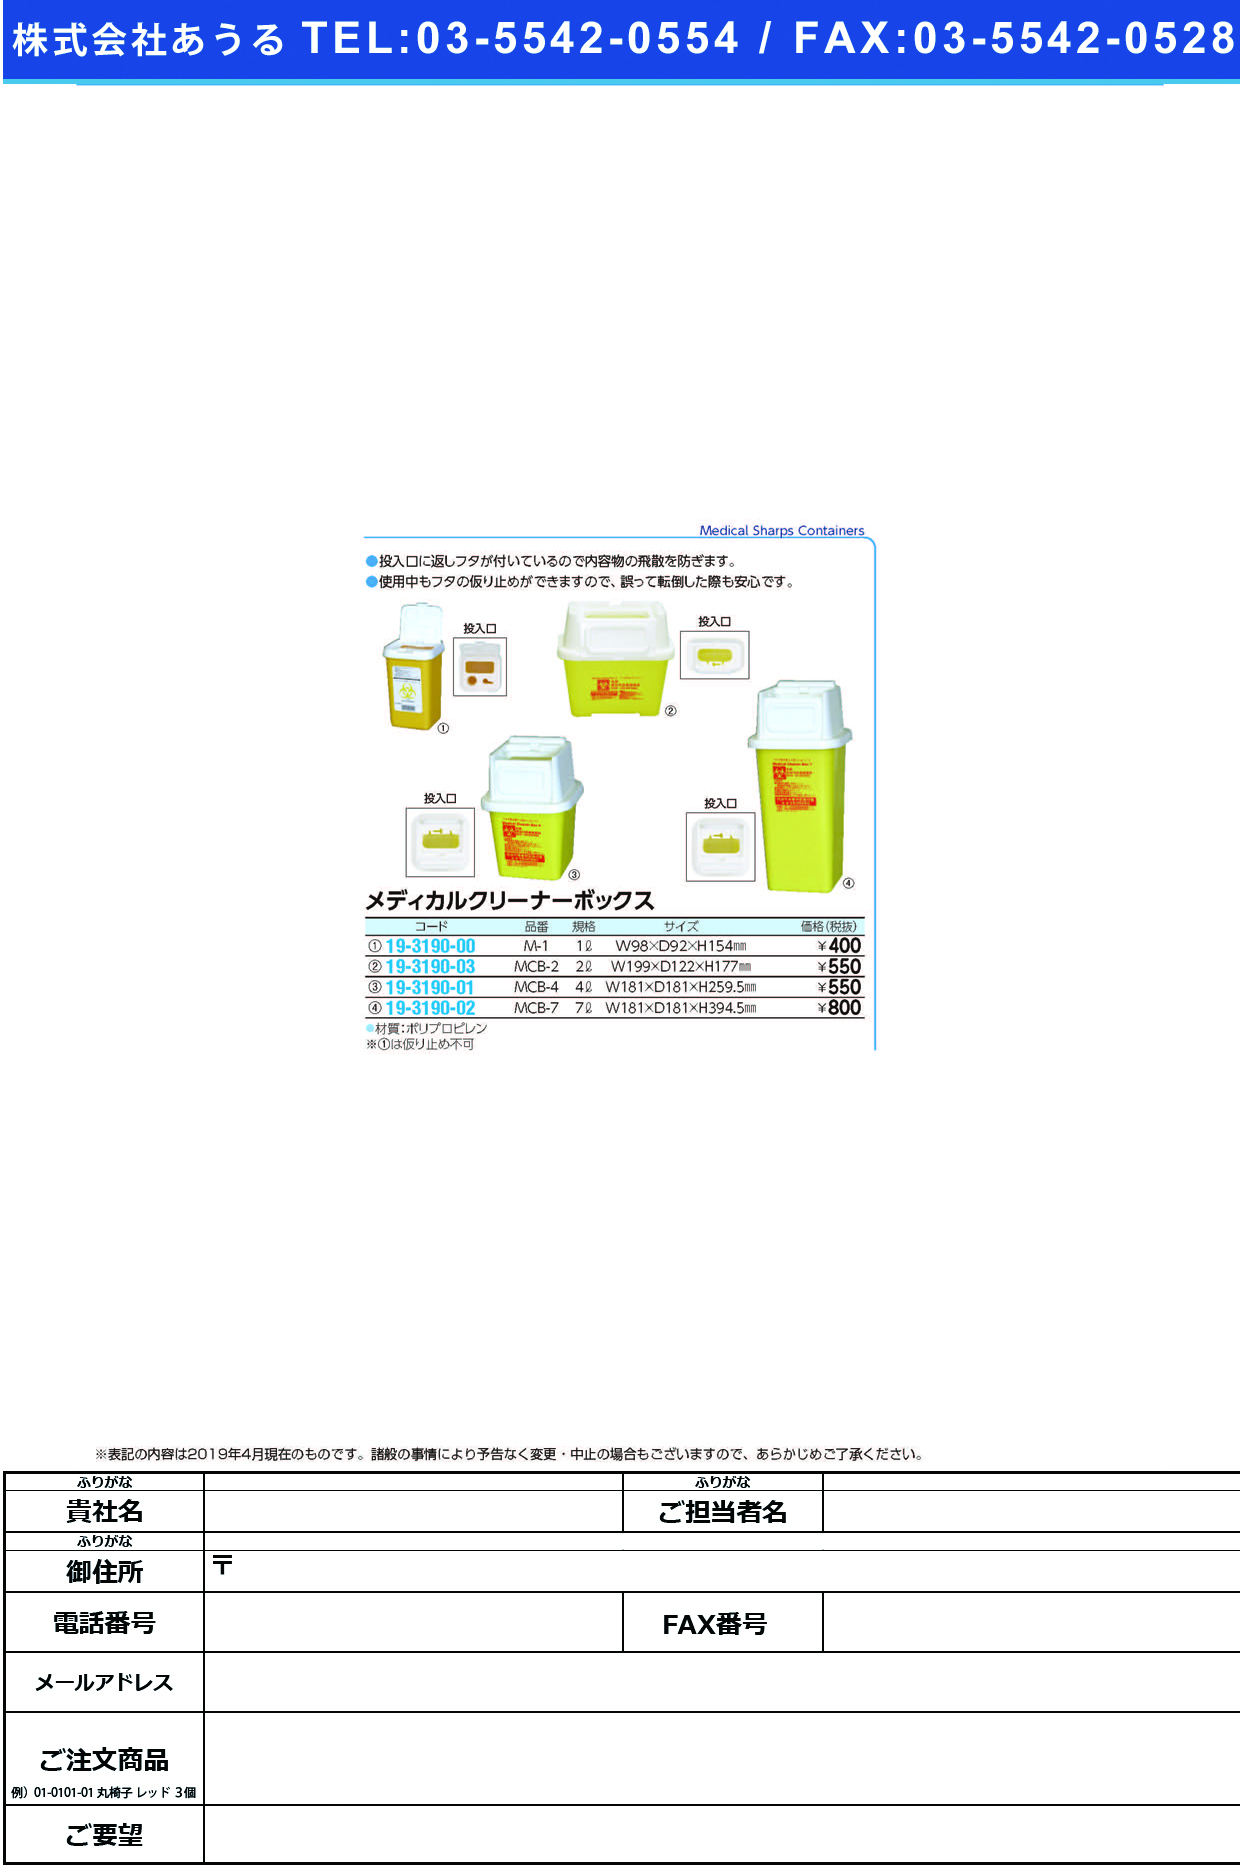 (19-3190-02)メディカルクリーナーボックス MCB-7(7L) ﾒﾃﾞｨｶﾙｸﾘｰﾅｰﾎﾞｯｸｽ【1個単位】【2019年カタログ商品】